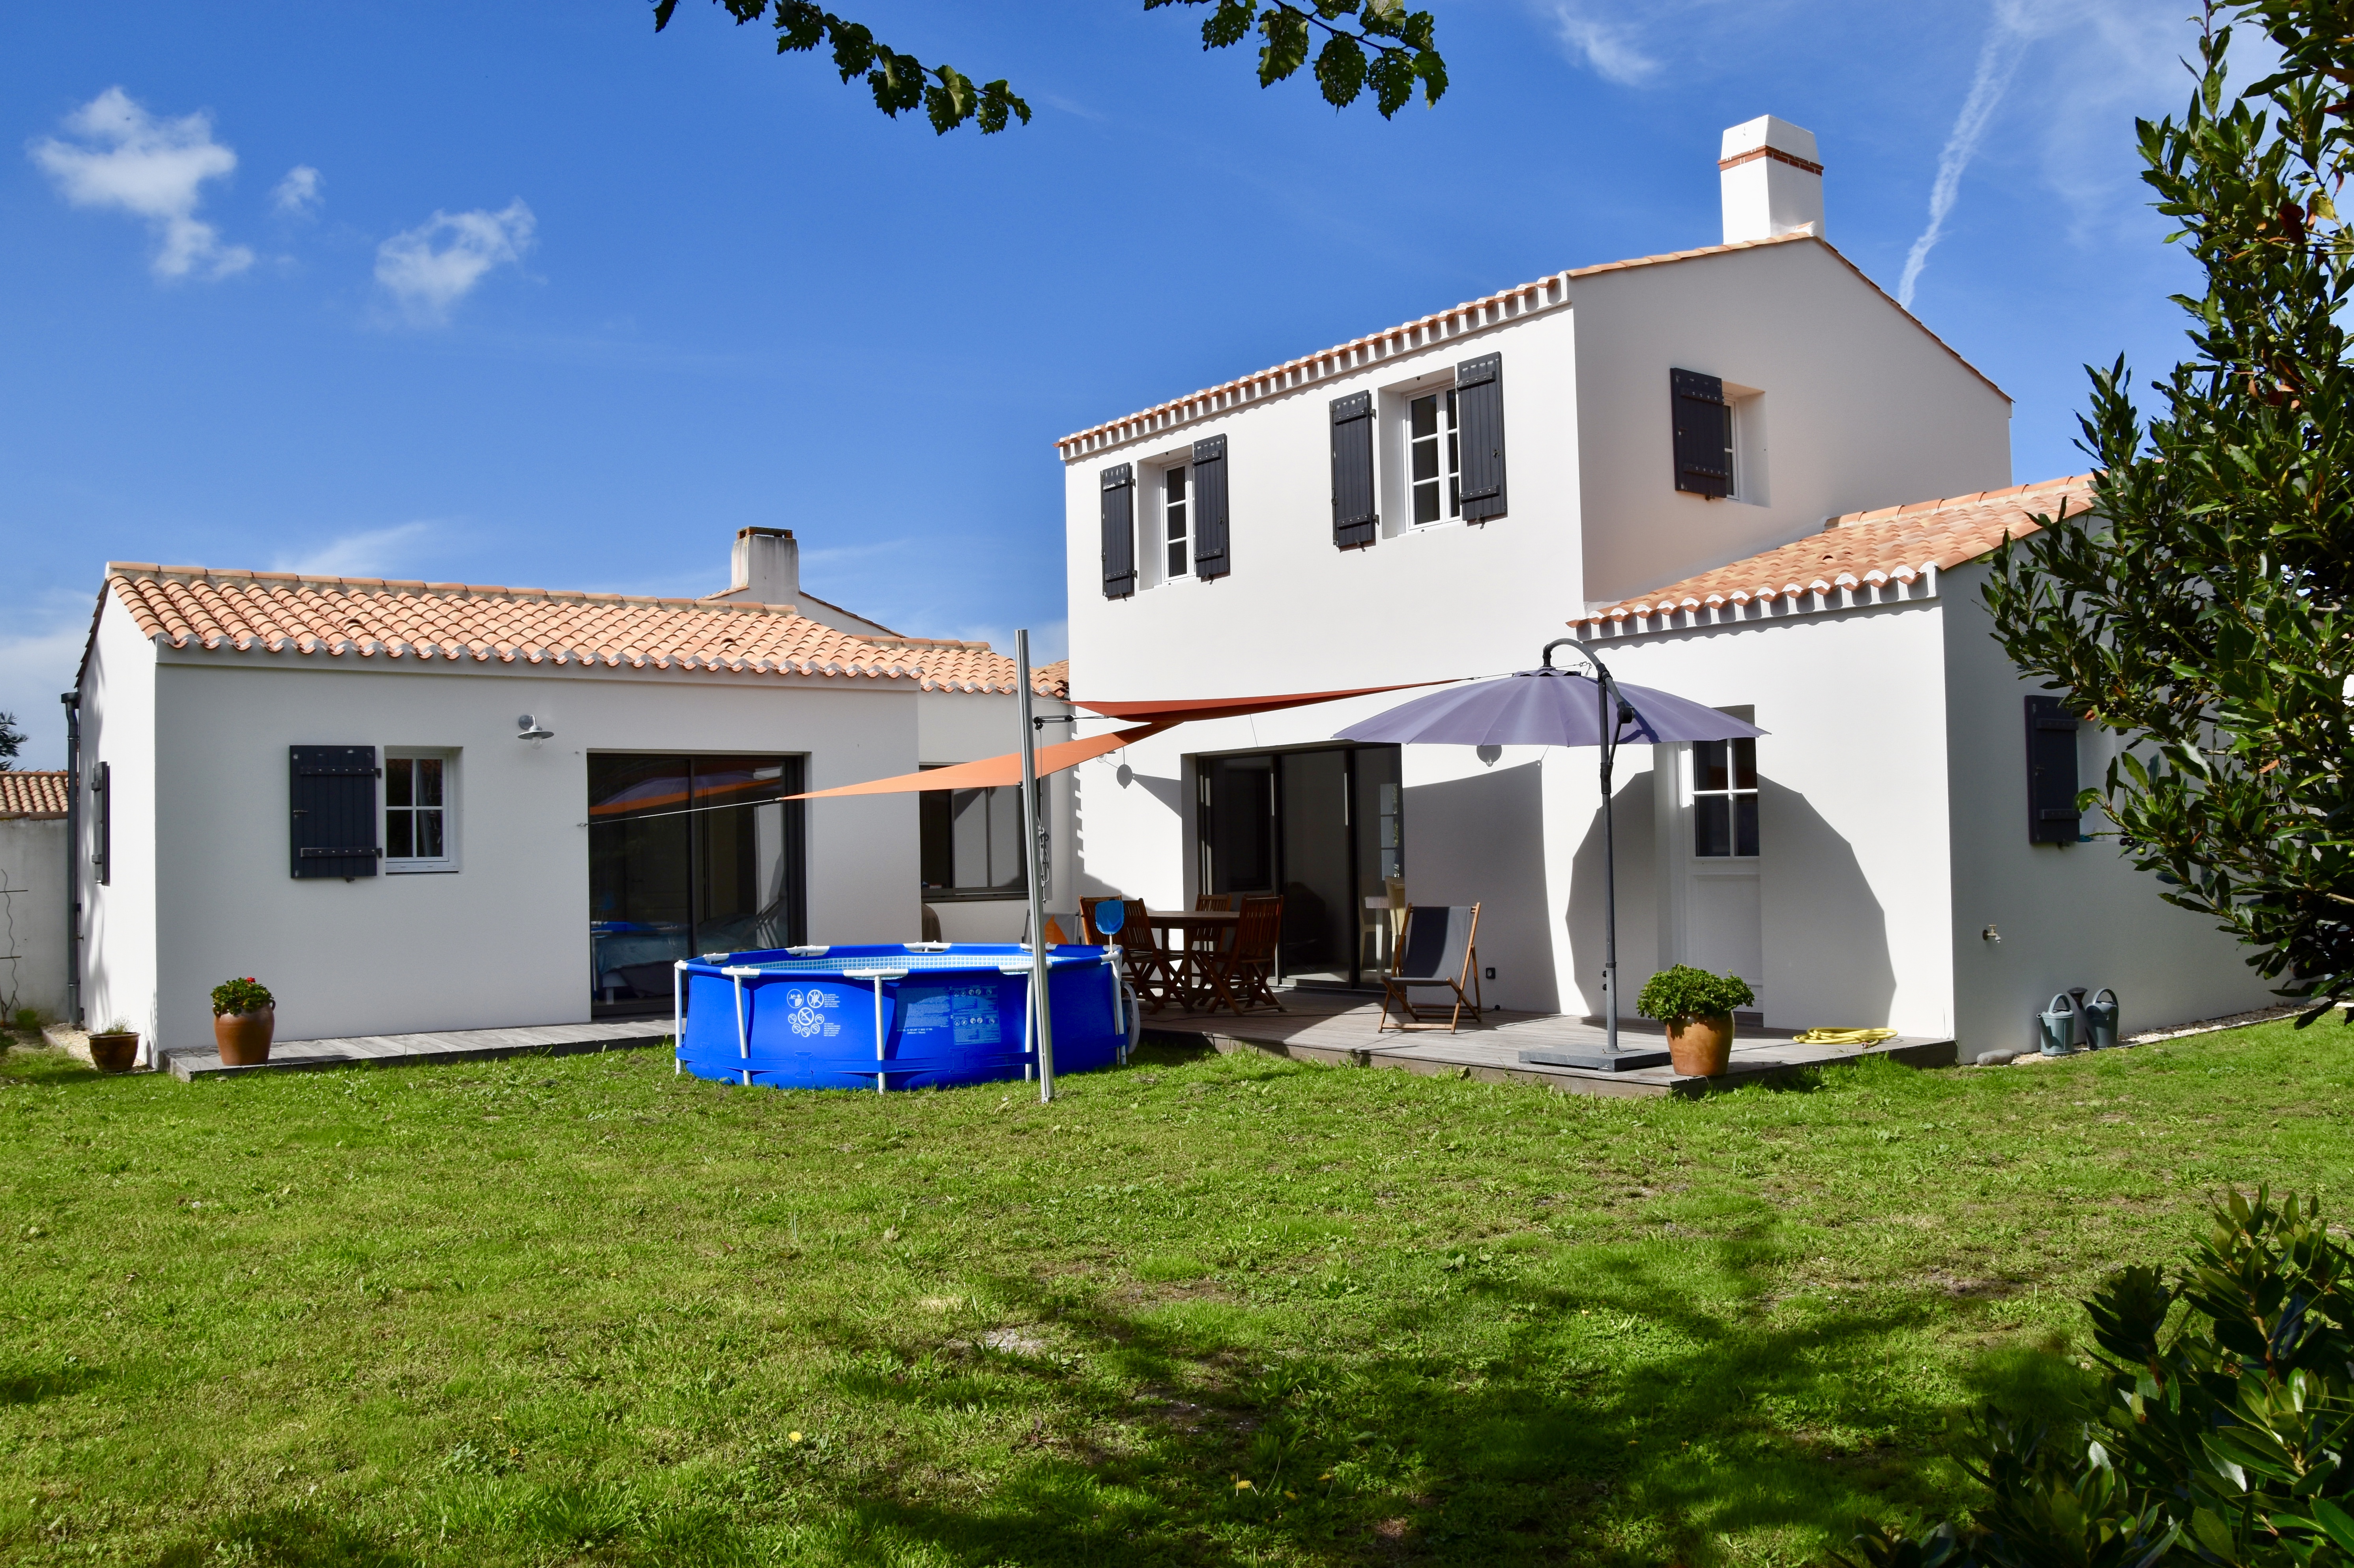 A vendre maison Noirmoutier en l'Ile 85330; 724 500 €